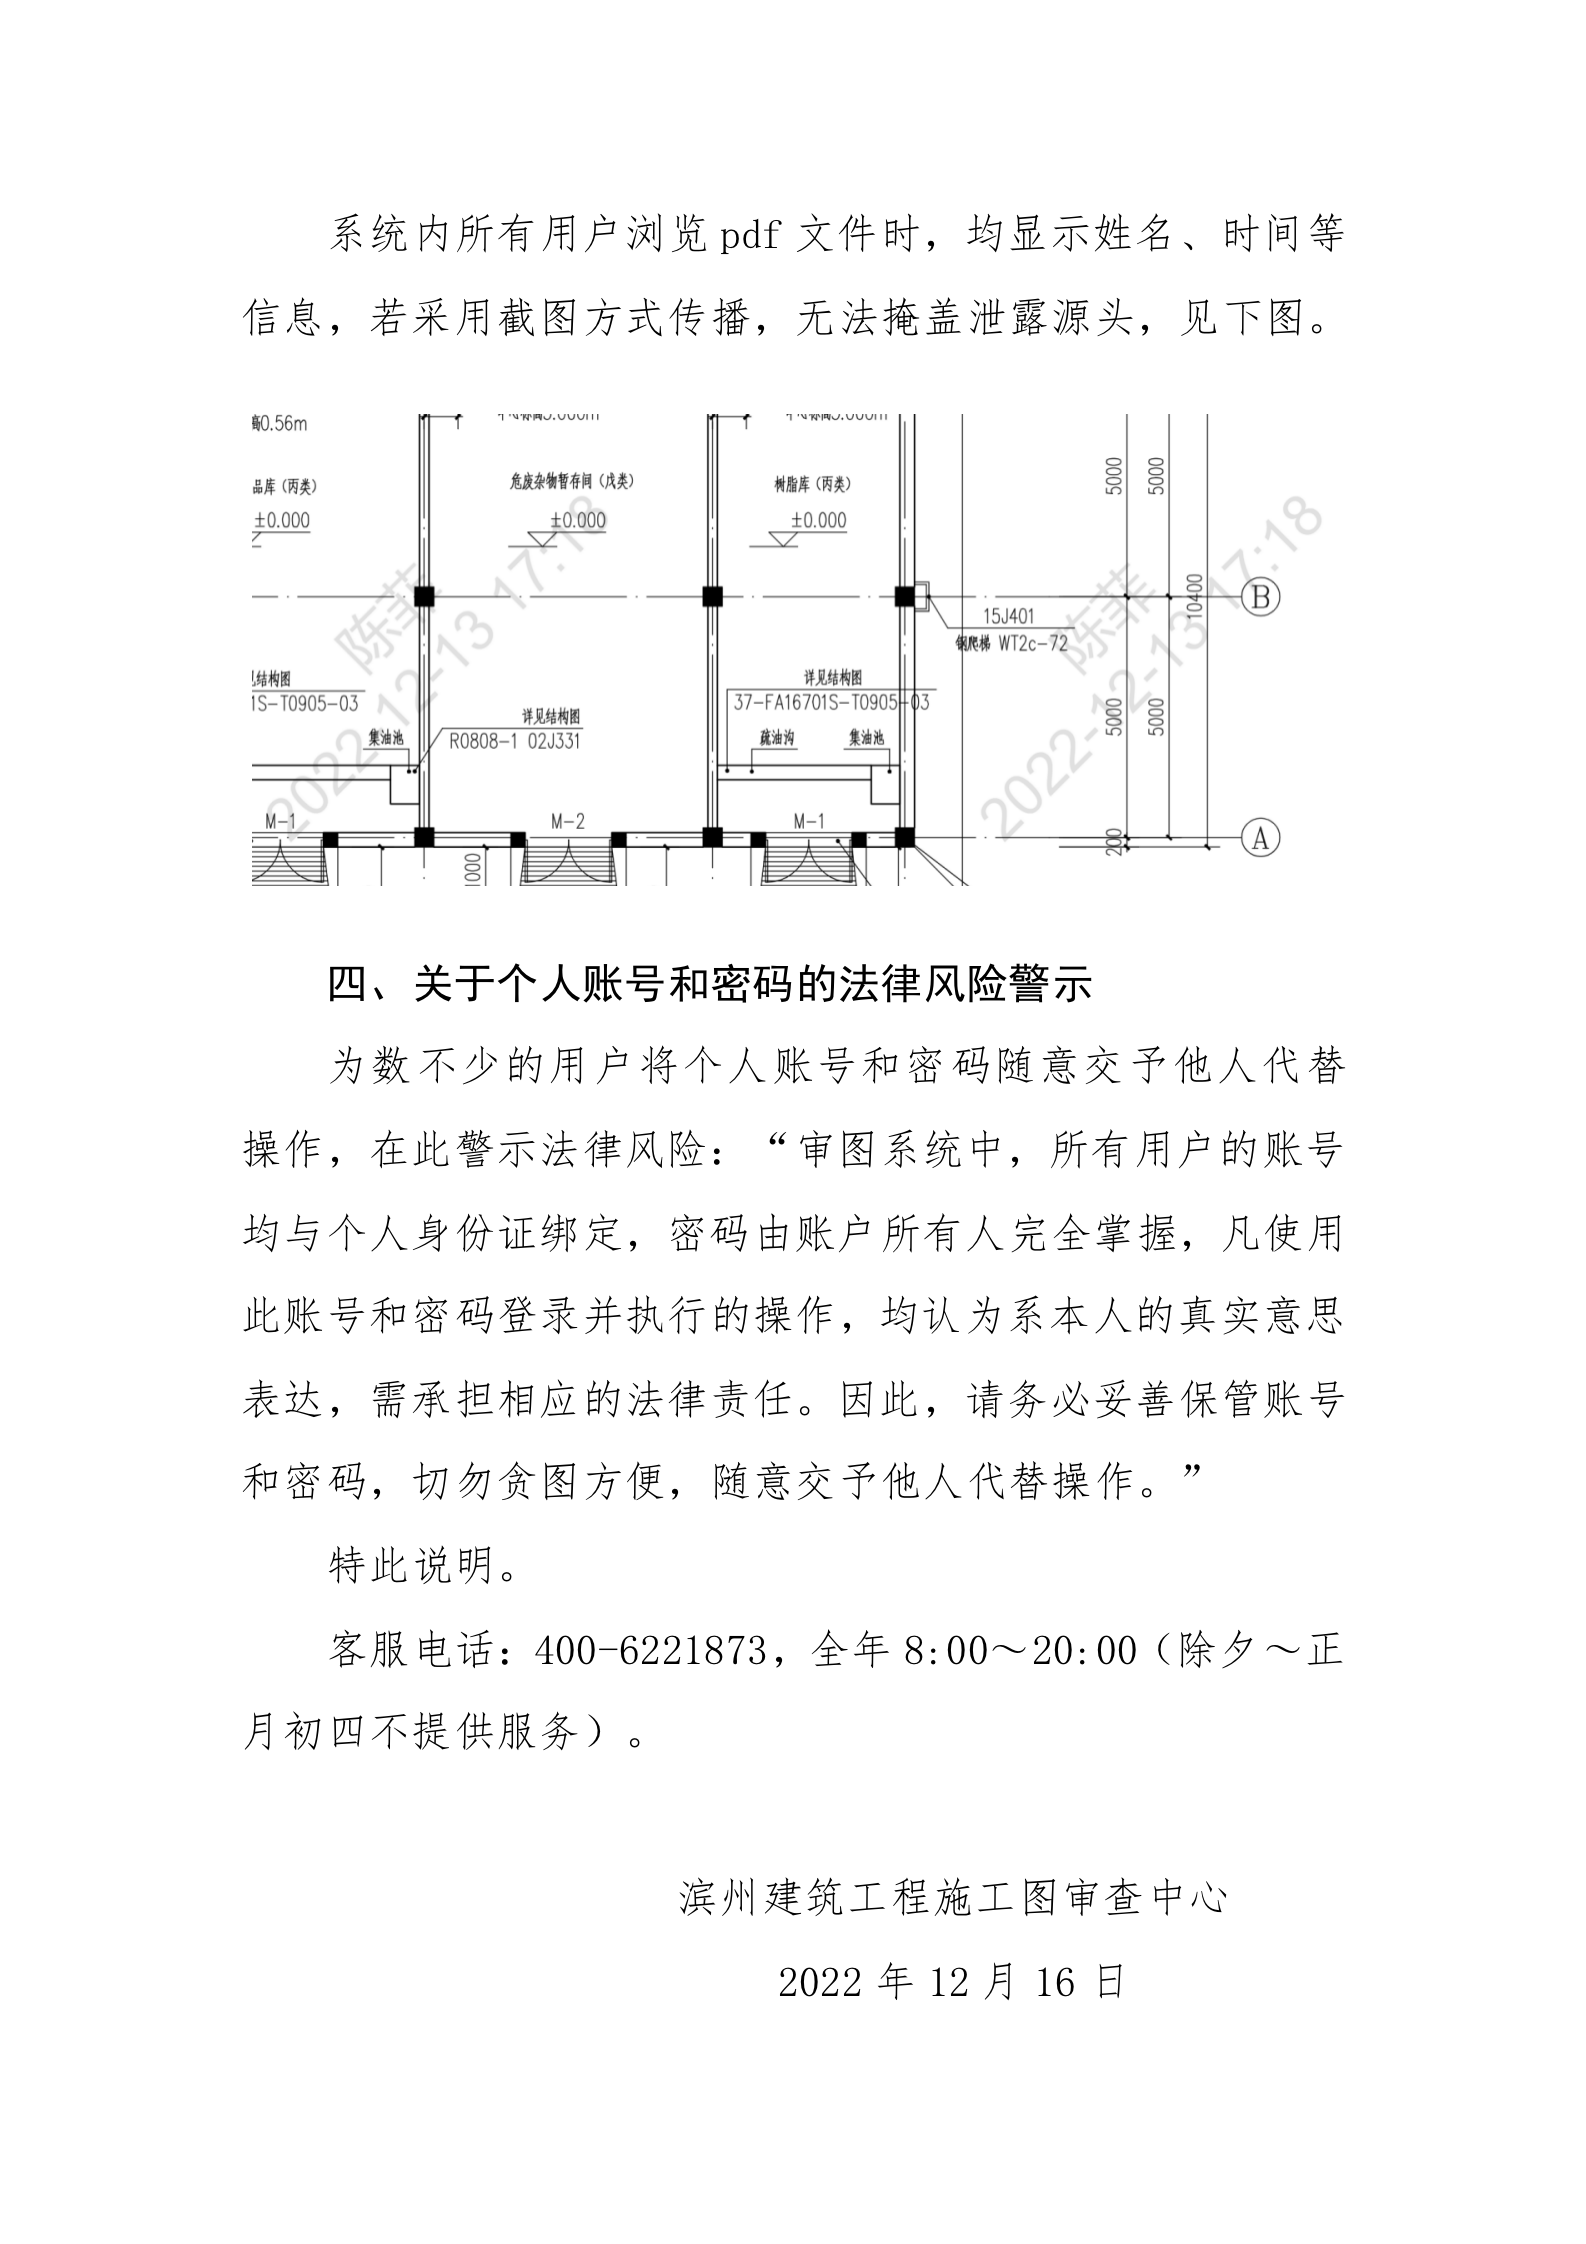 滨州市工程建设项目联合审图系统关于图纸数字安全保证的说明_02.png